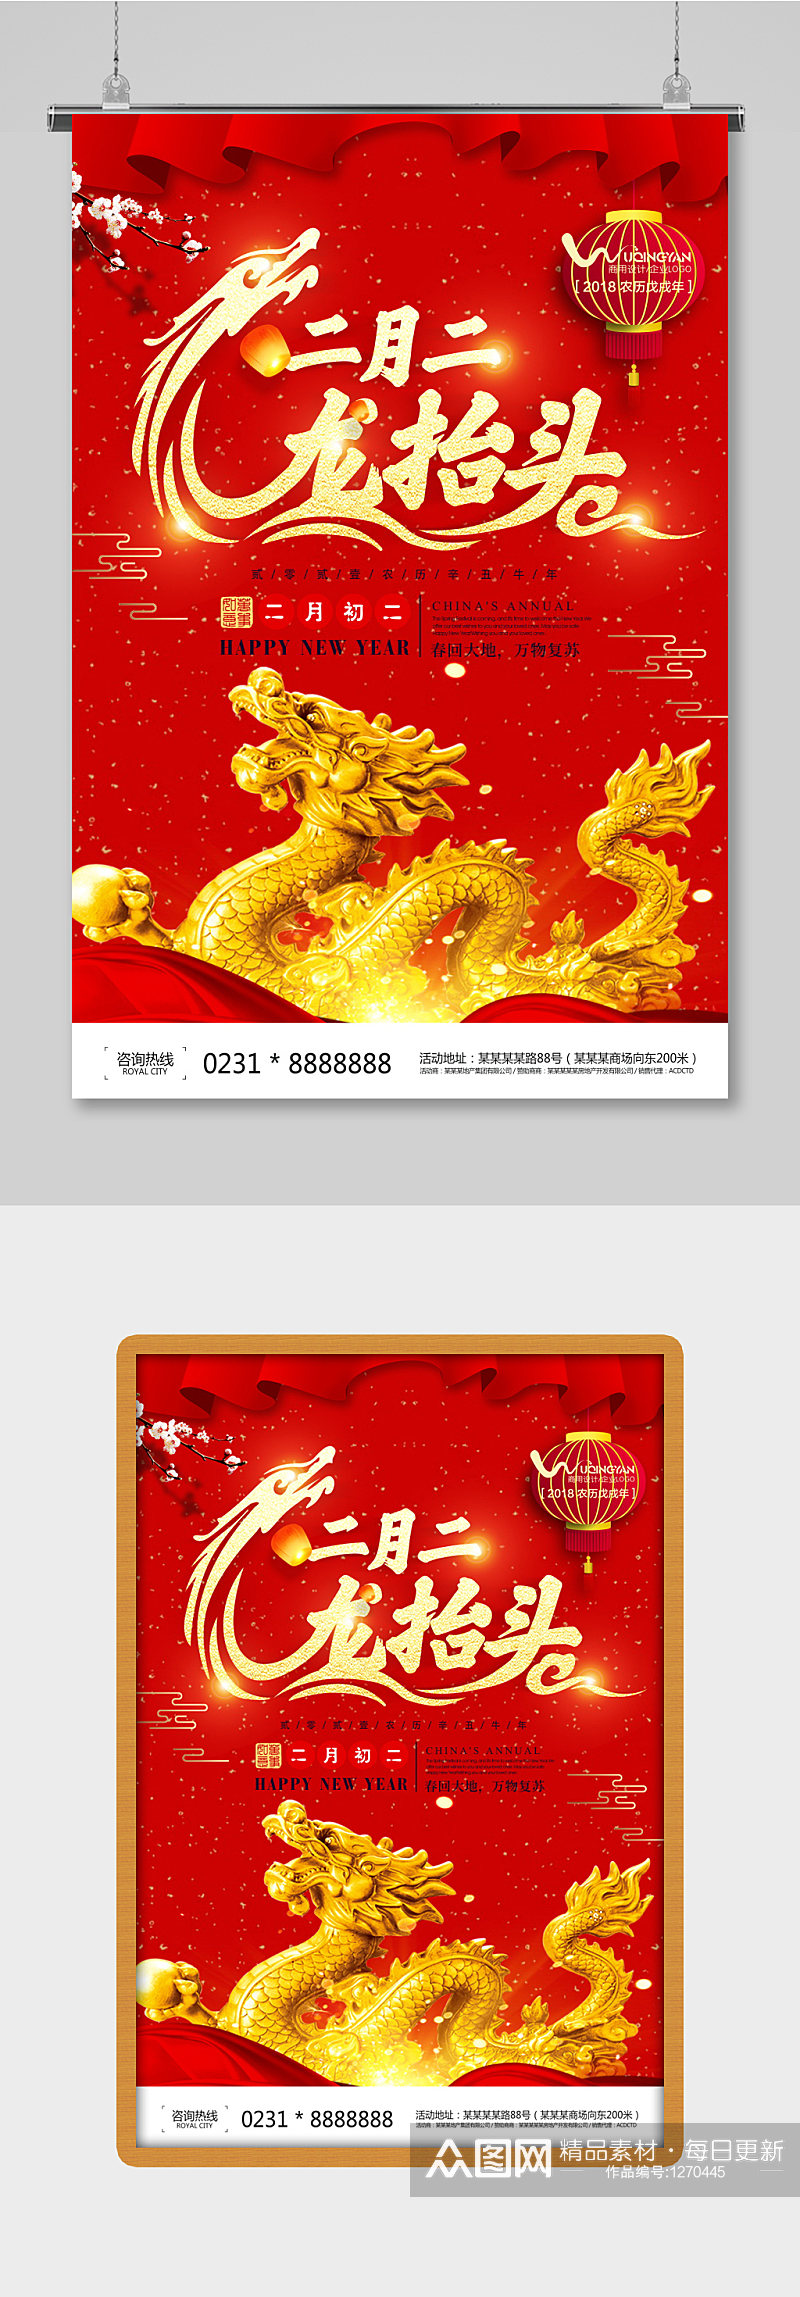 创意中国风二月二龙抬头海报设计素材